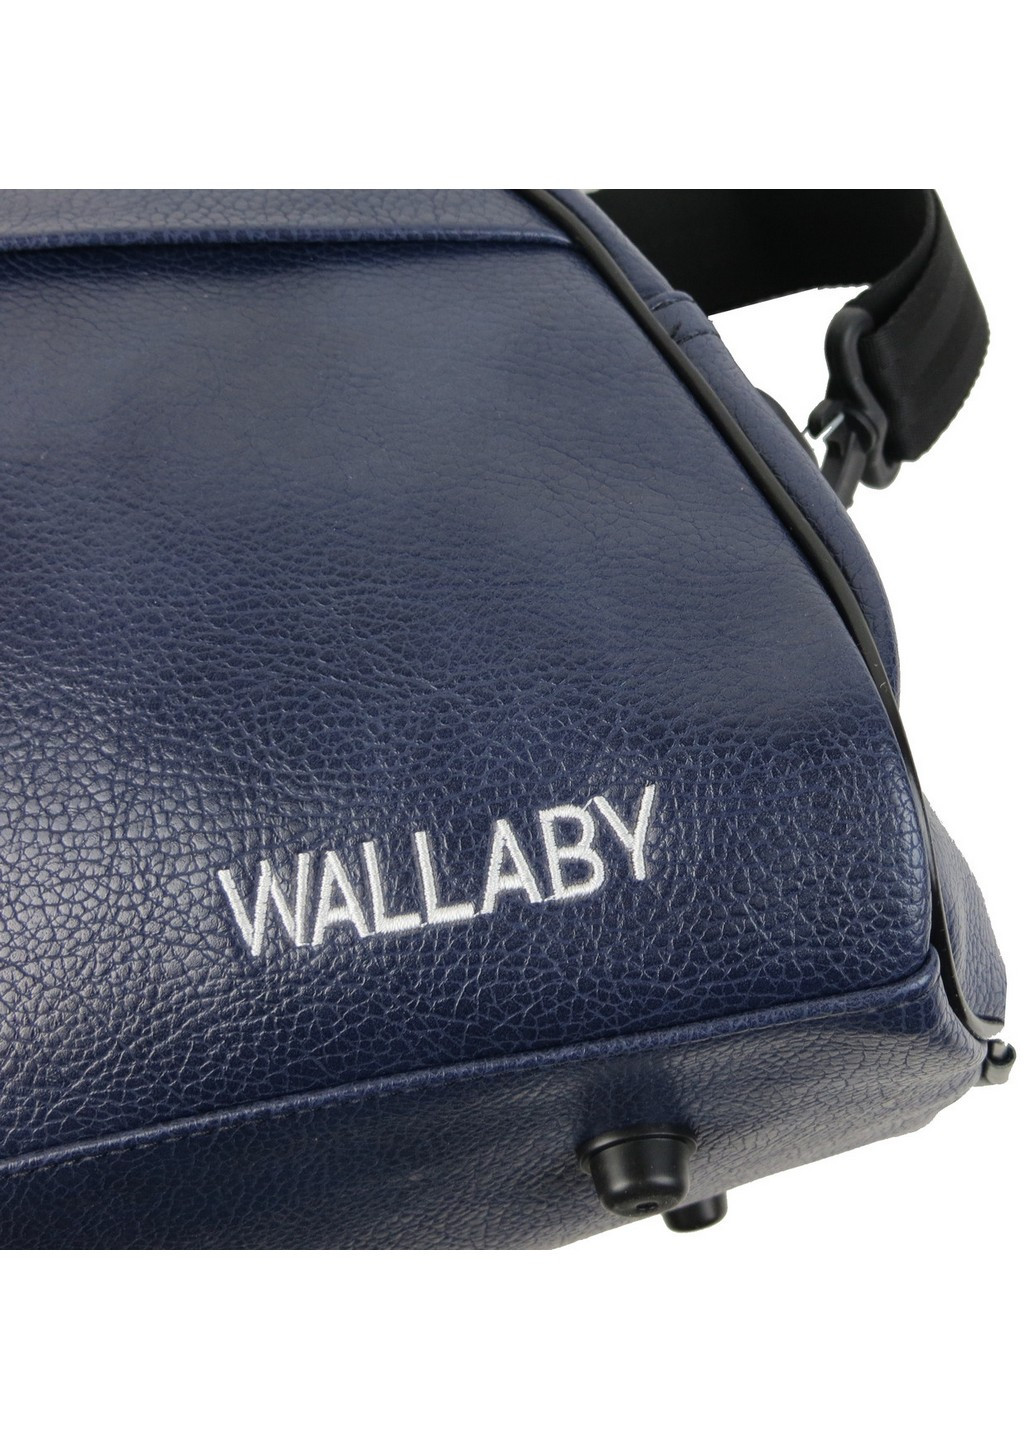 Спортивная сумка для фитнеса из искусственной кожи 44x23x19 см Wallaby (258844900)